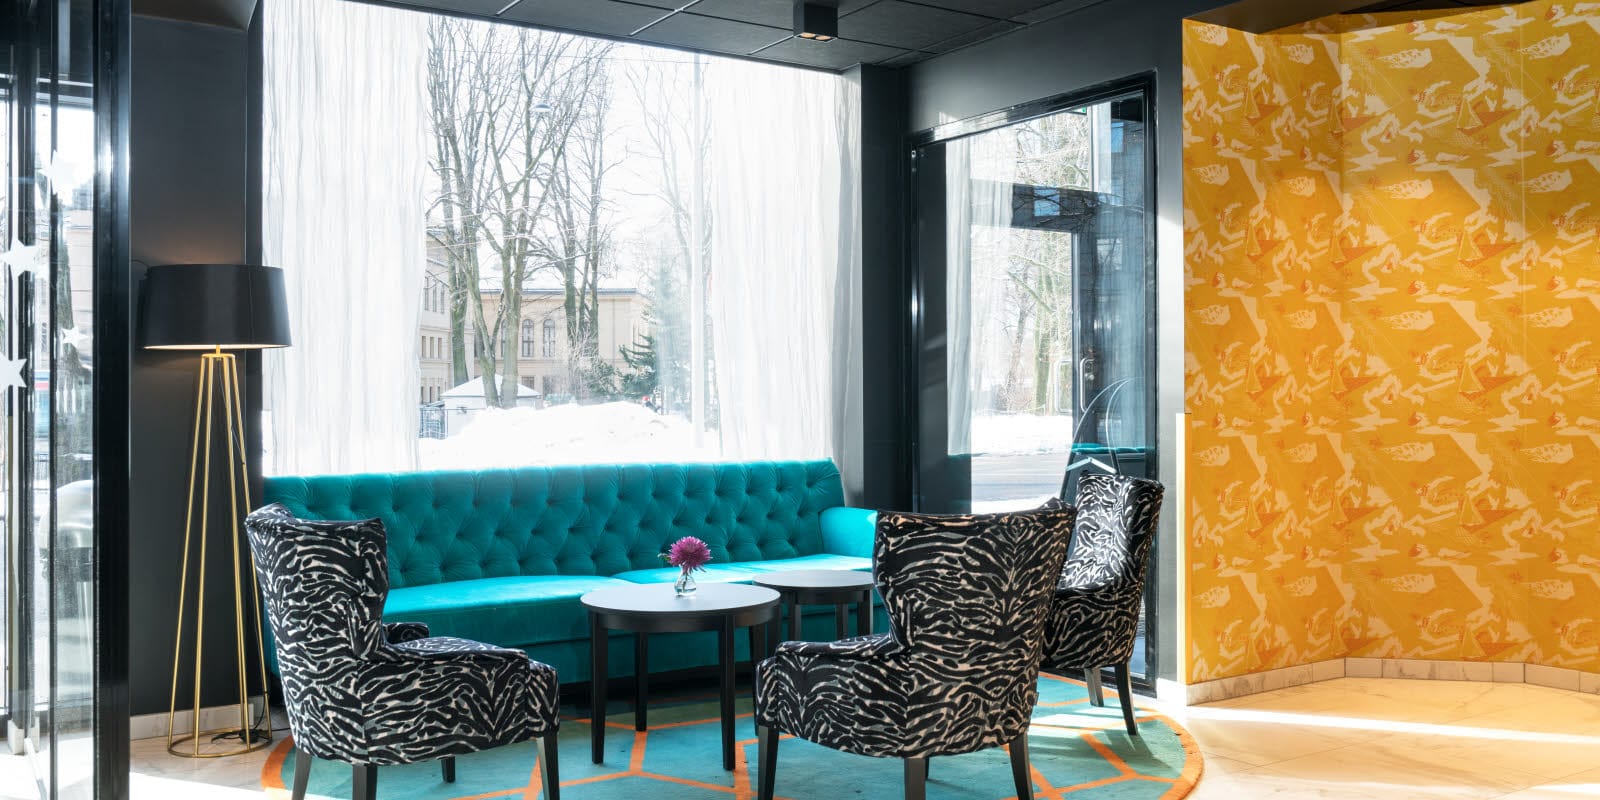 Receptionsområde/lobby med zebrarandiga fåtöljer och en stor soffa på Thon Hotel Europa i centrala Oslo precis vid Slottsparken